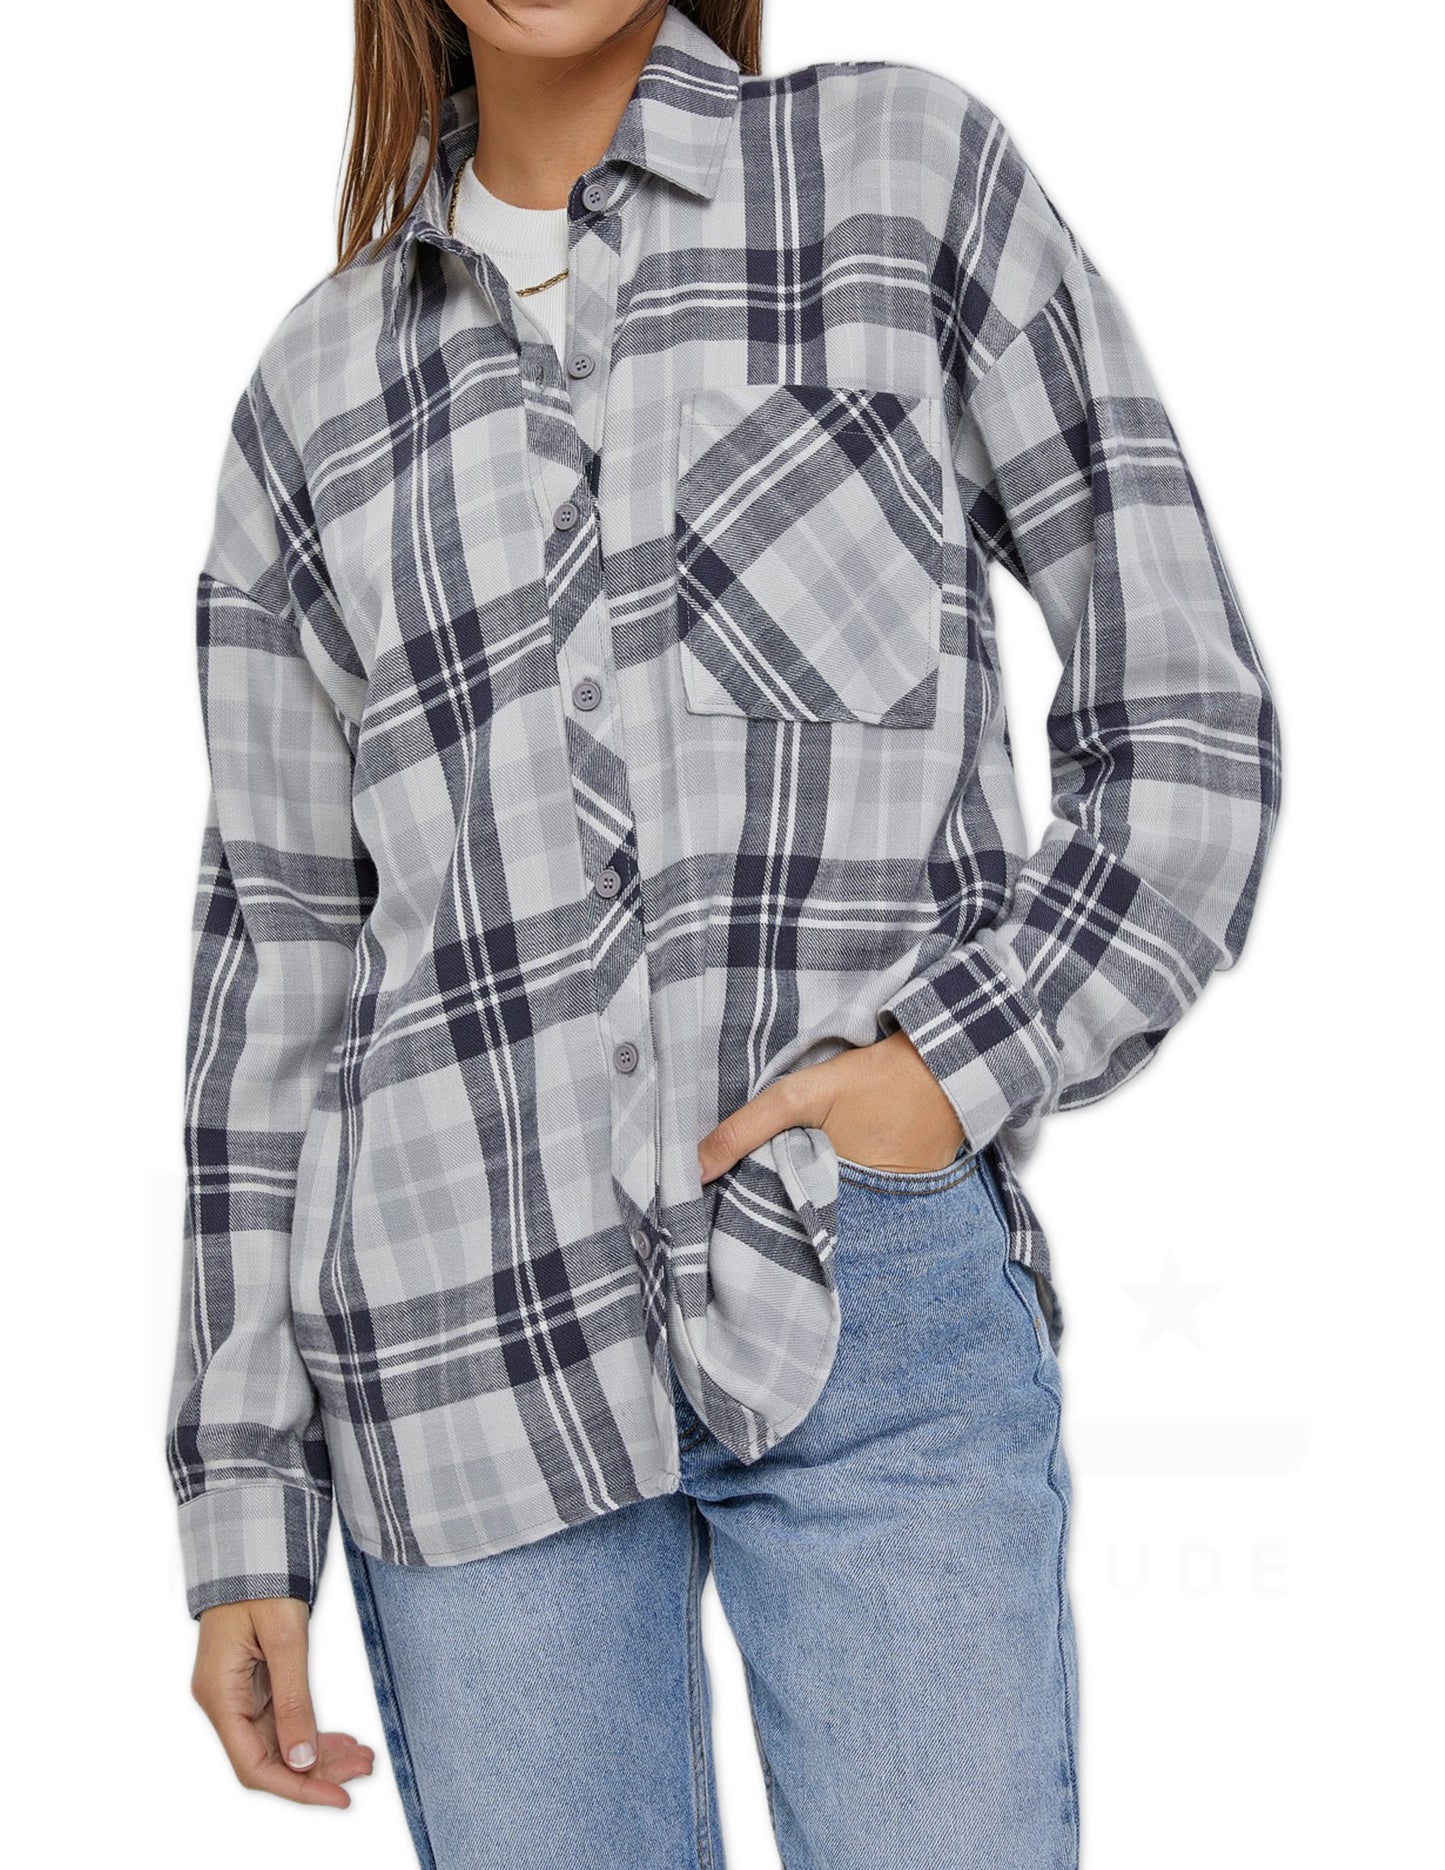 Oversized Boyfriend Flannel Shirt - Navy